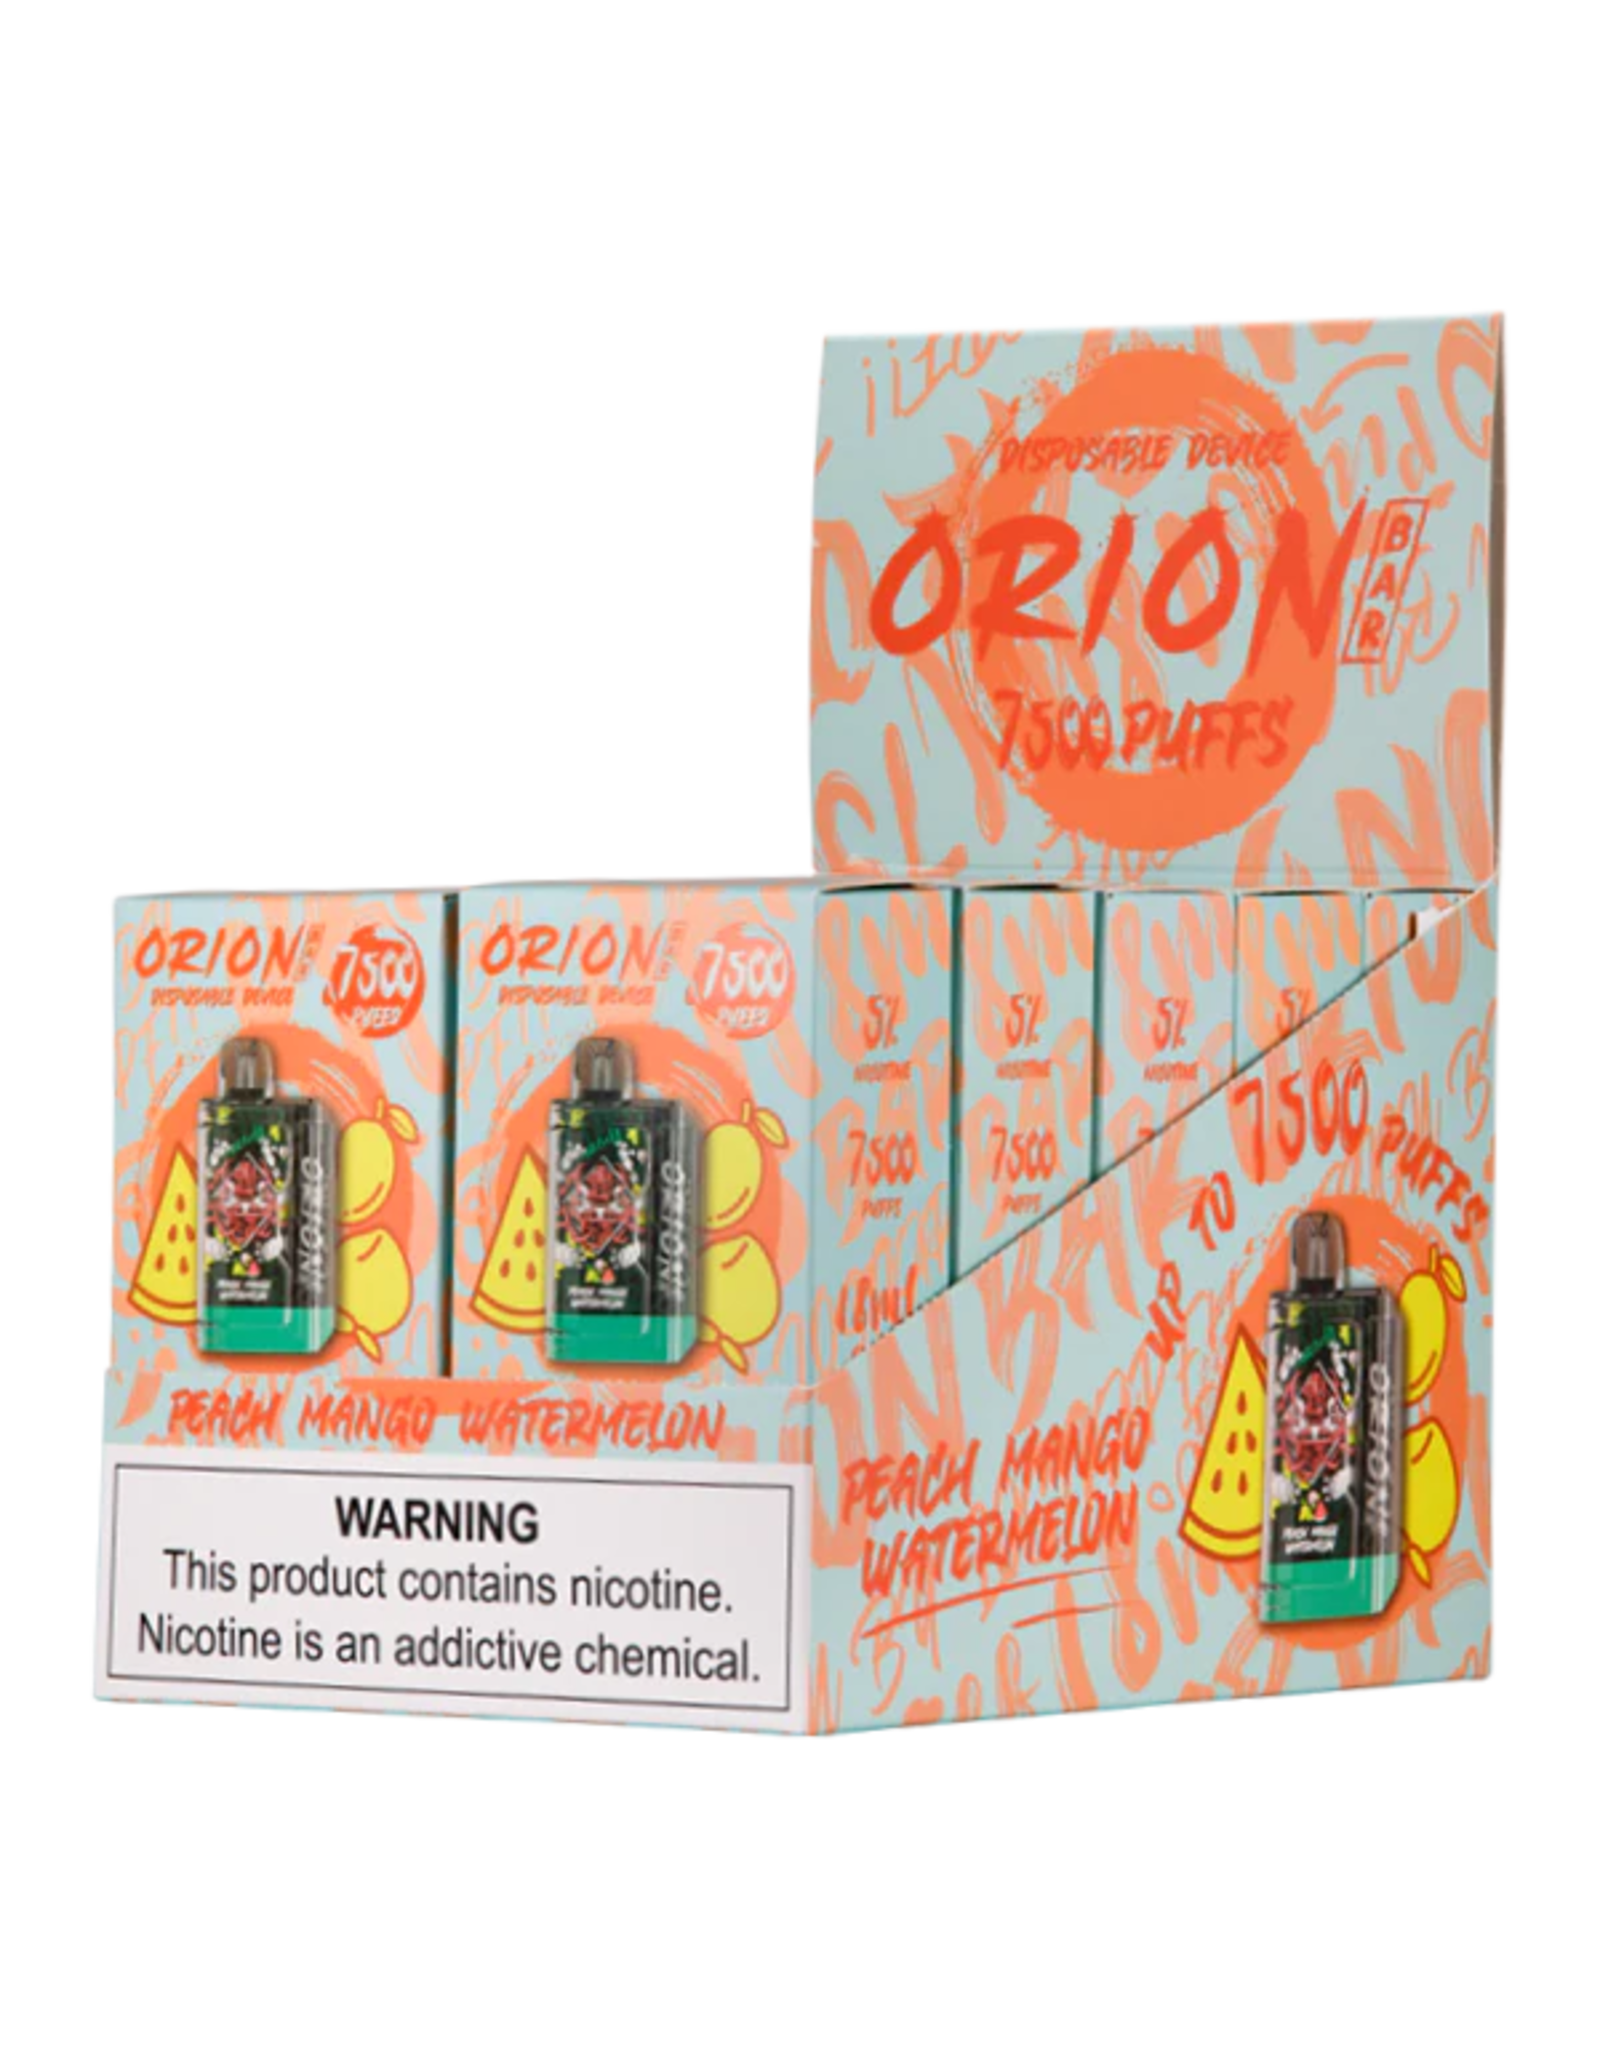 Orion Bar 7500 Puff - Peach Mango Watermelon Box